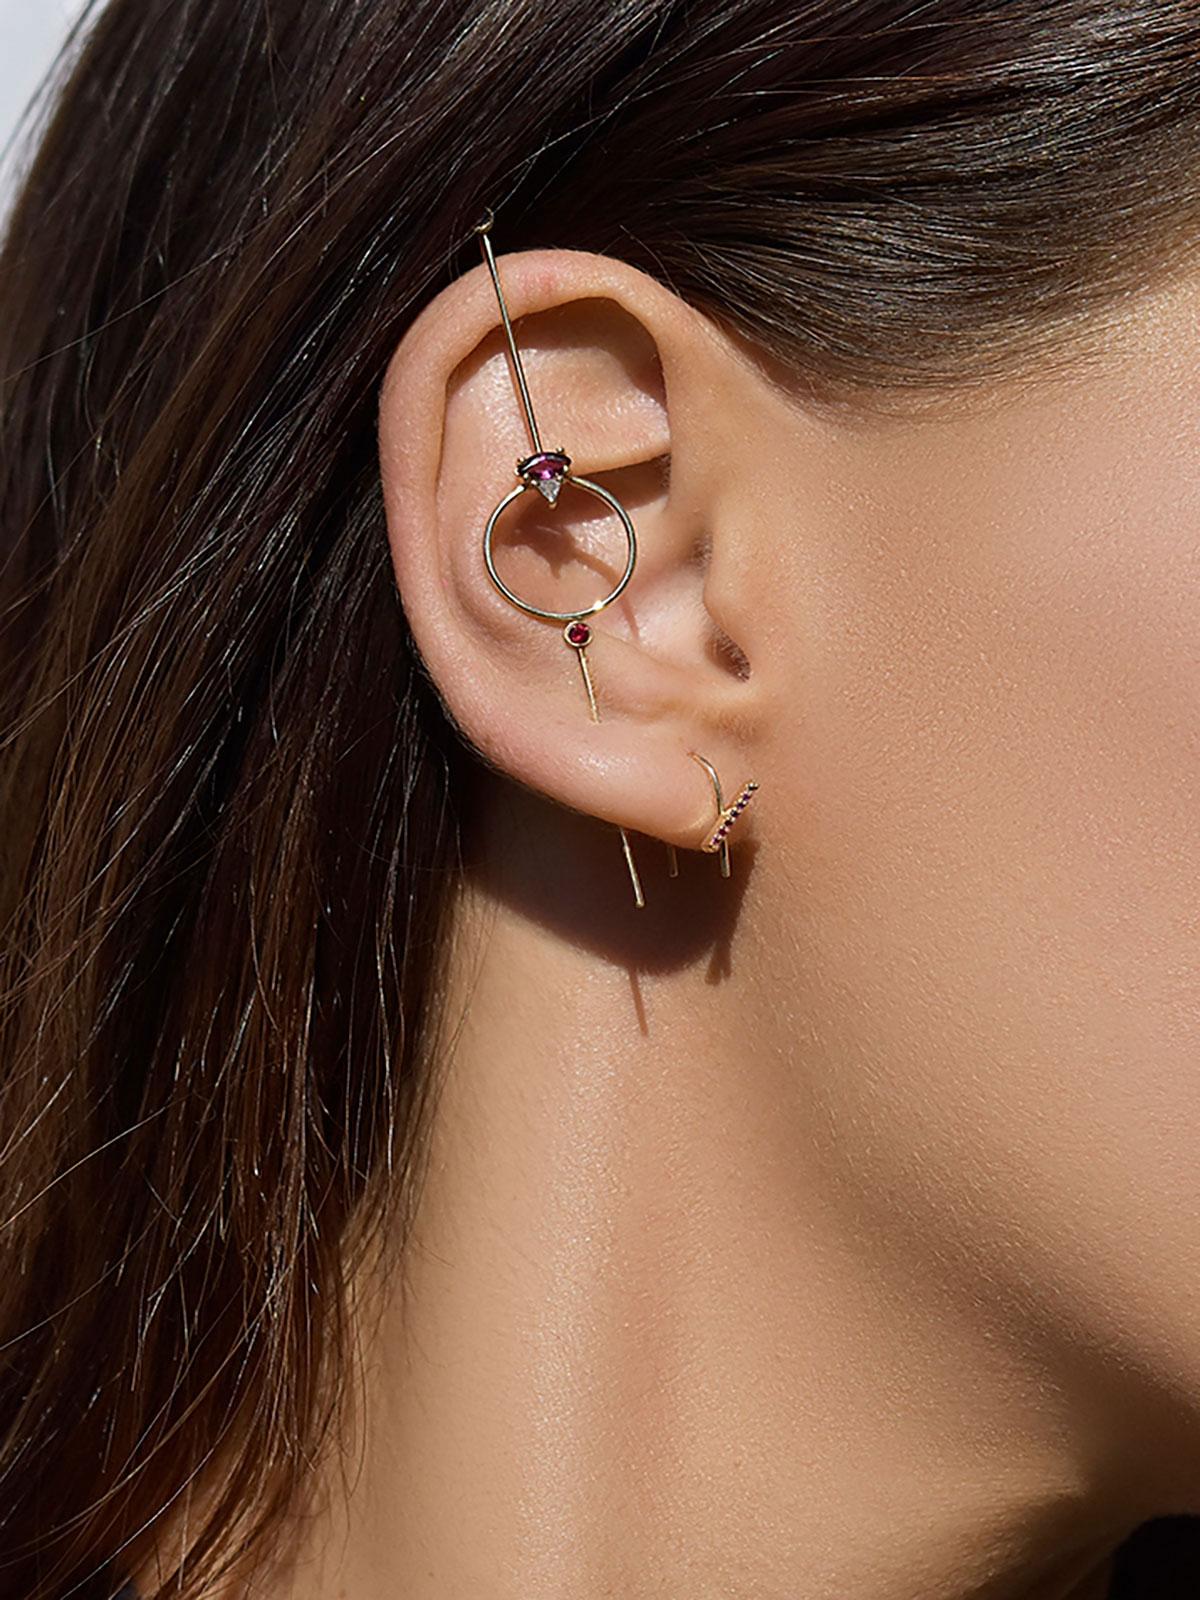 Der Seeing Eye Needle Earring besteht aus einem nadelähnlichen Goldstab, der durch das Ohrläppchen gestochen wird und oben einen Haken hat. Dieser Stil besteht aus einem mit Edelsteinen geschmückten Kreis. 

Wie man es trägt: 
Fädeln Sie das